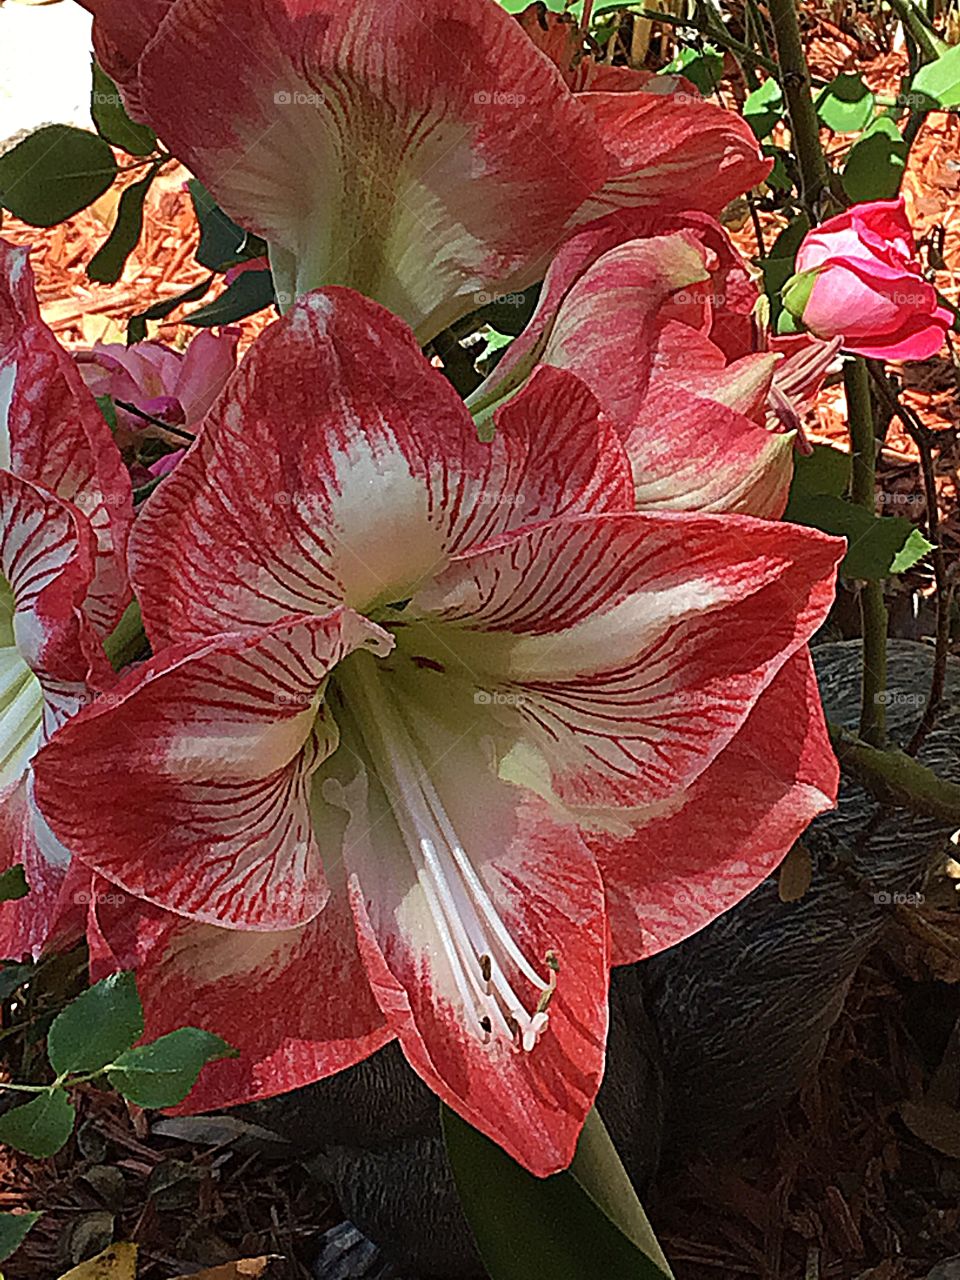 Beautiful close up of the Amaryllis flower